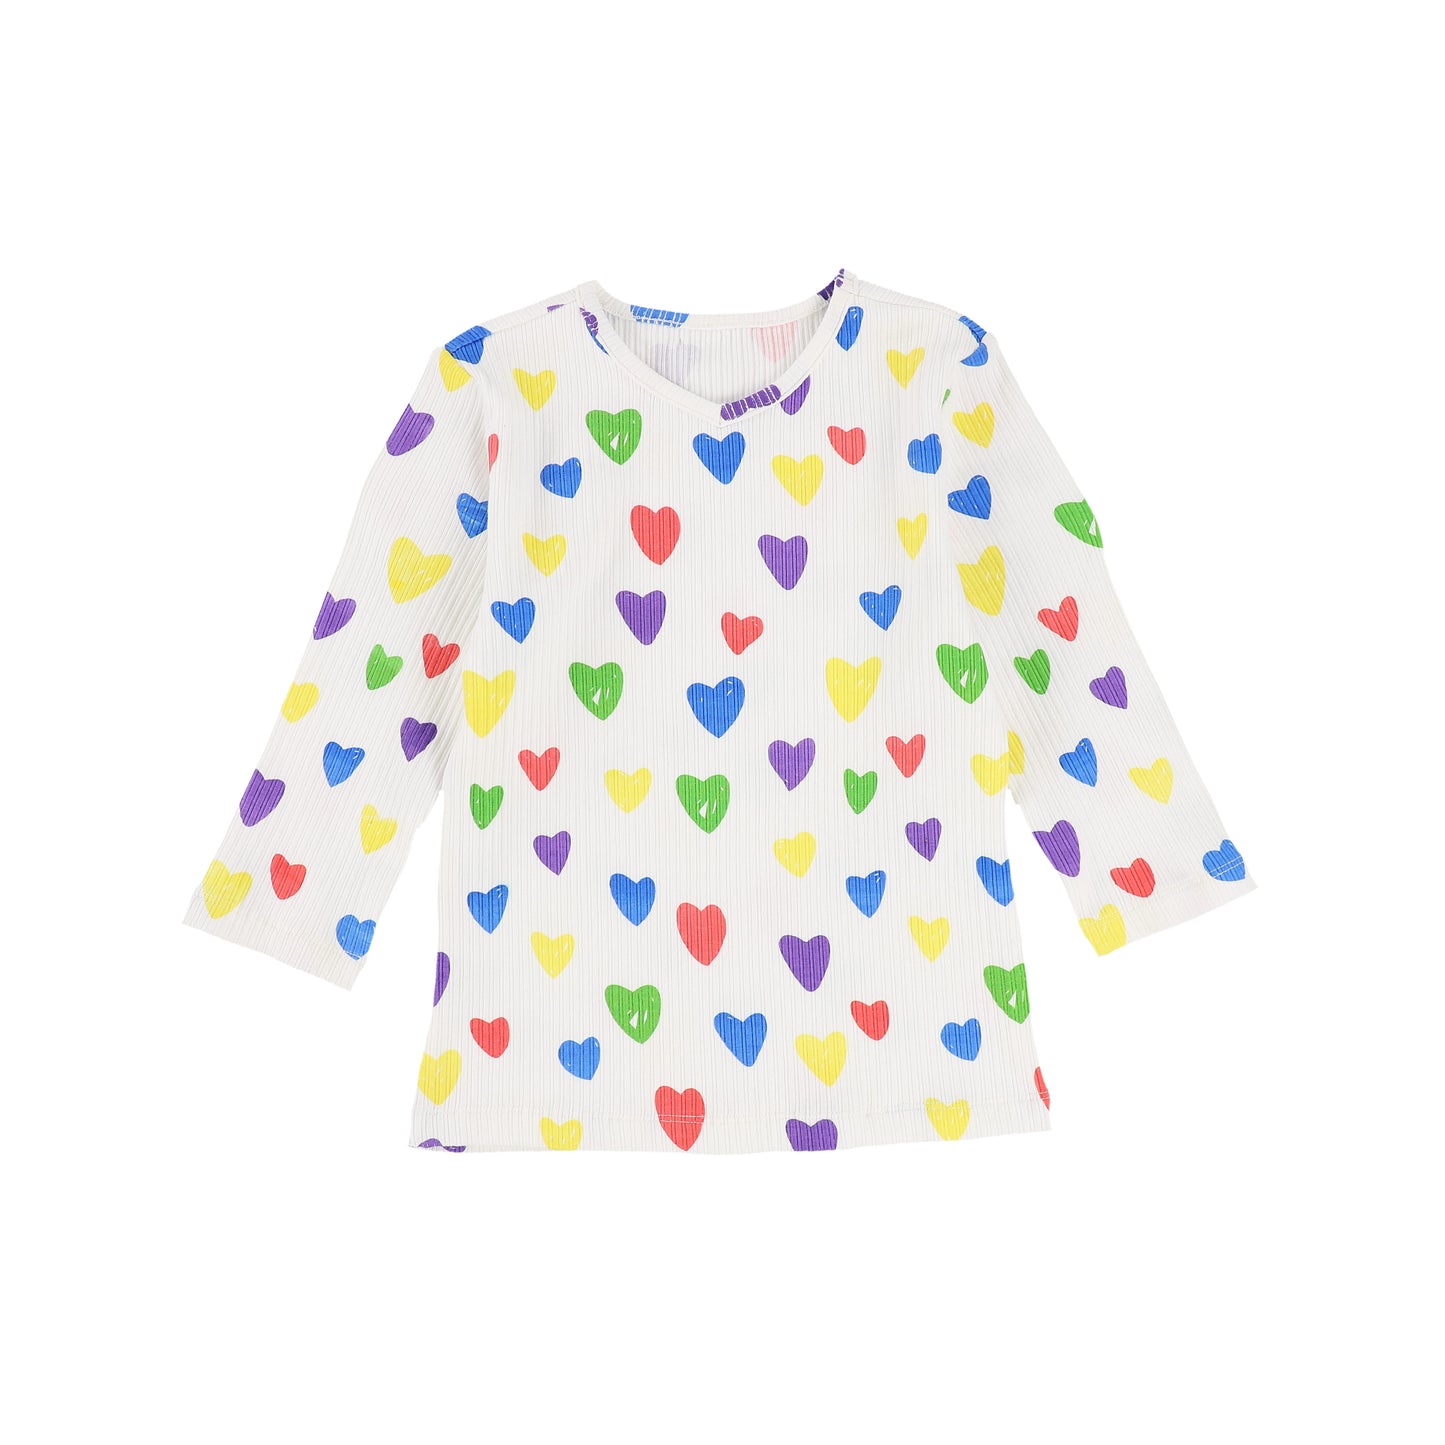 Girls Heart Tee Shirt